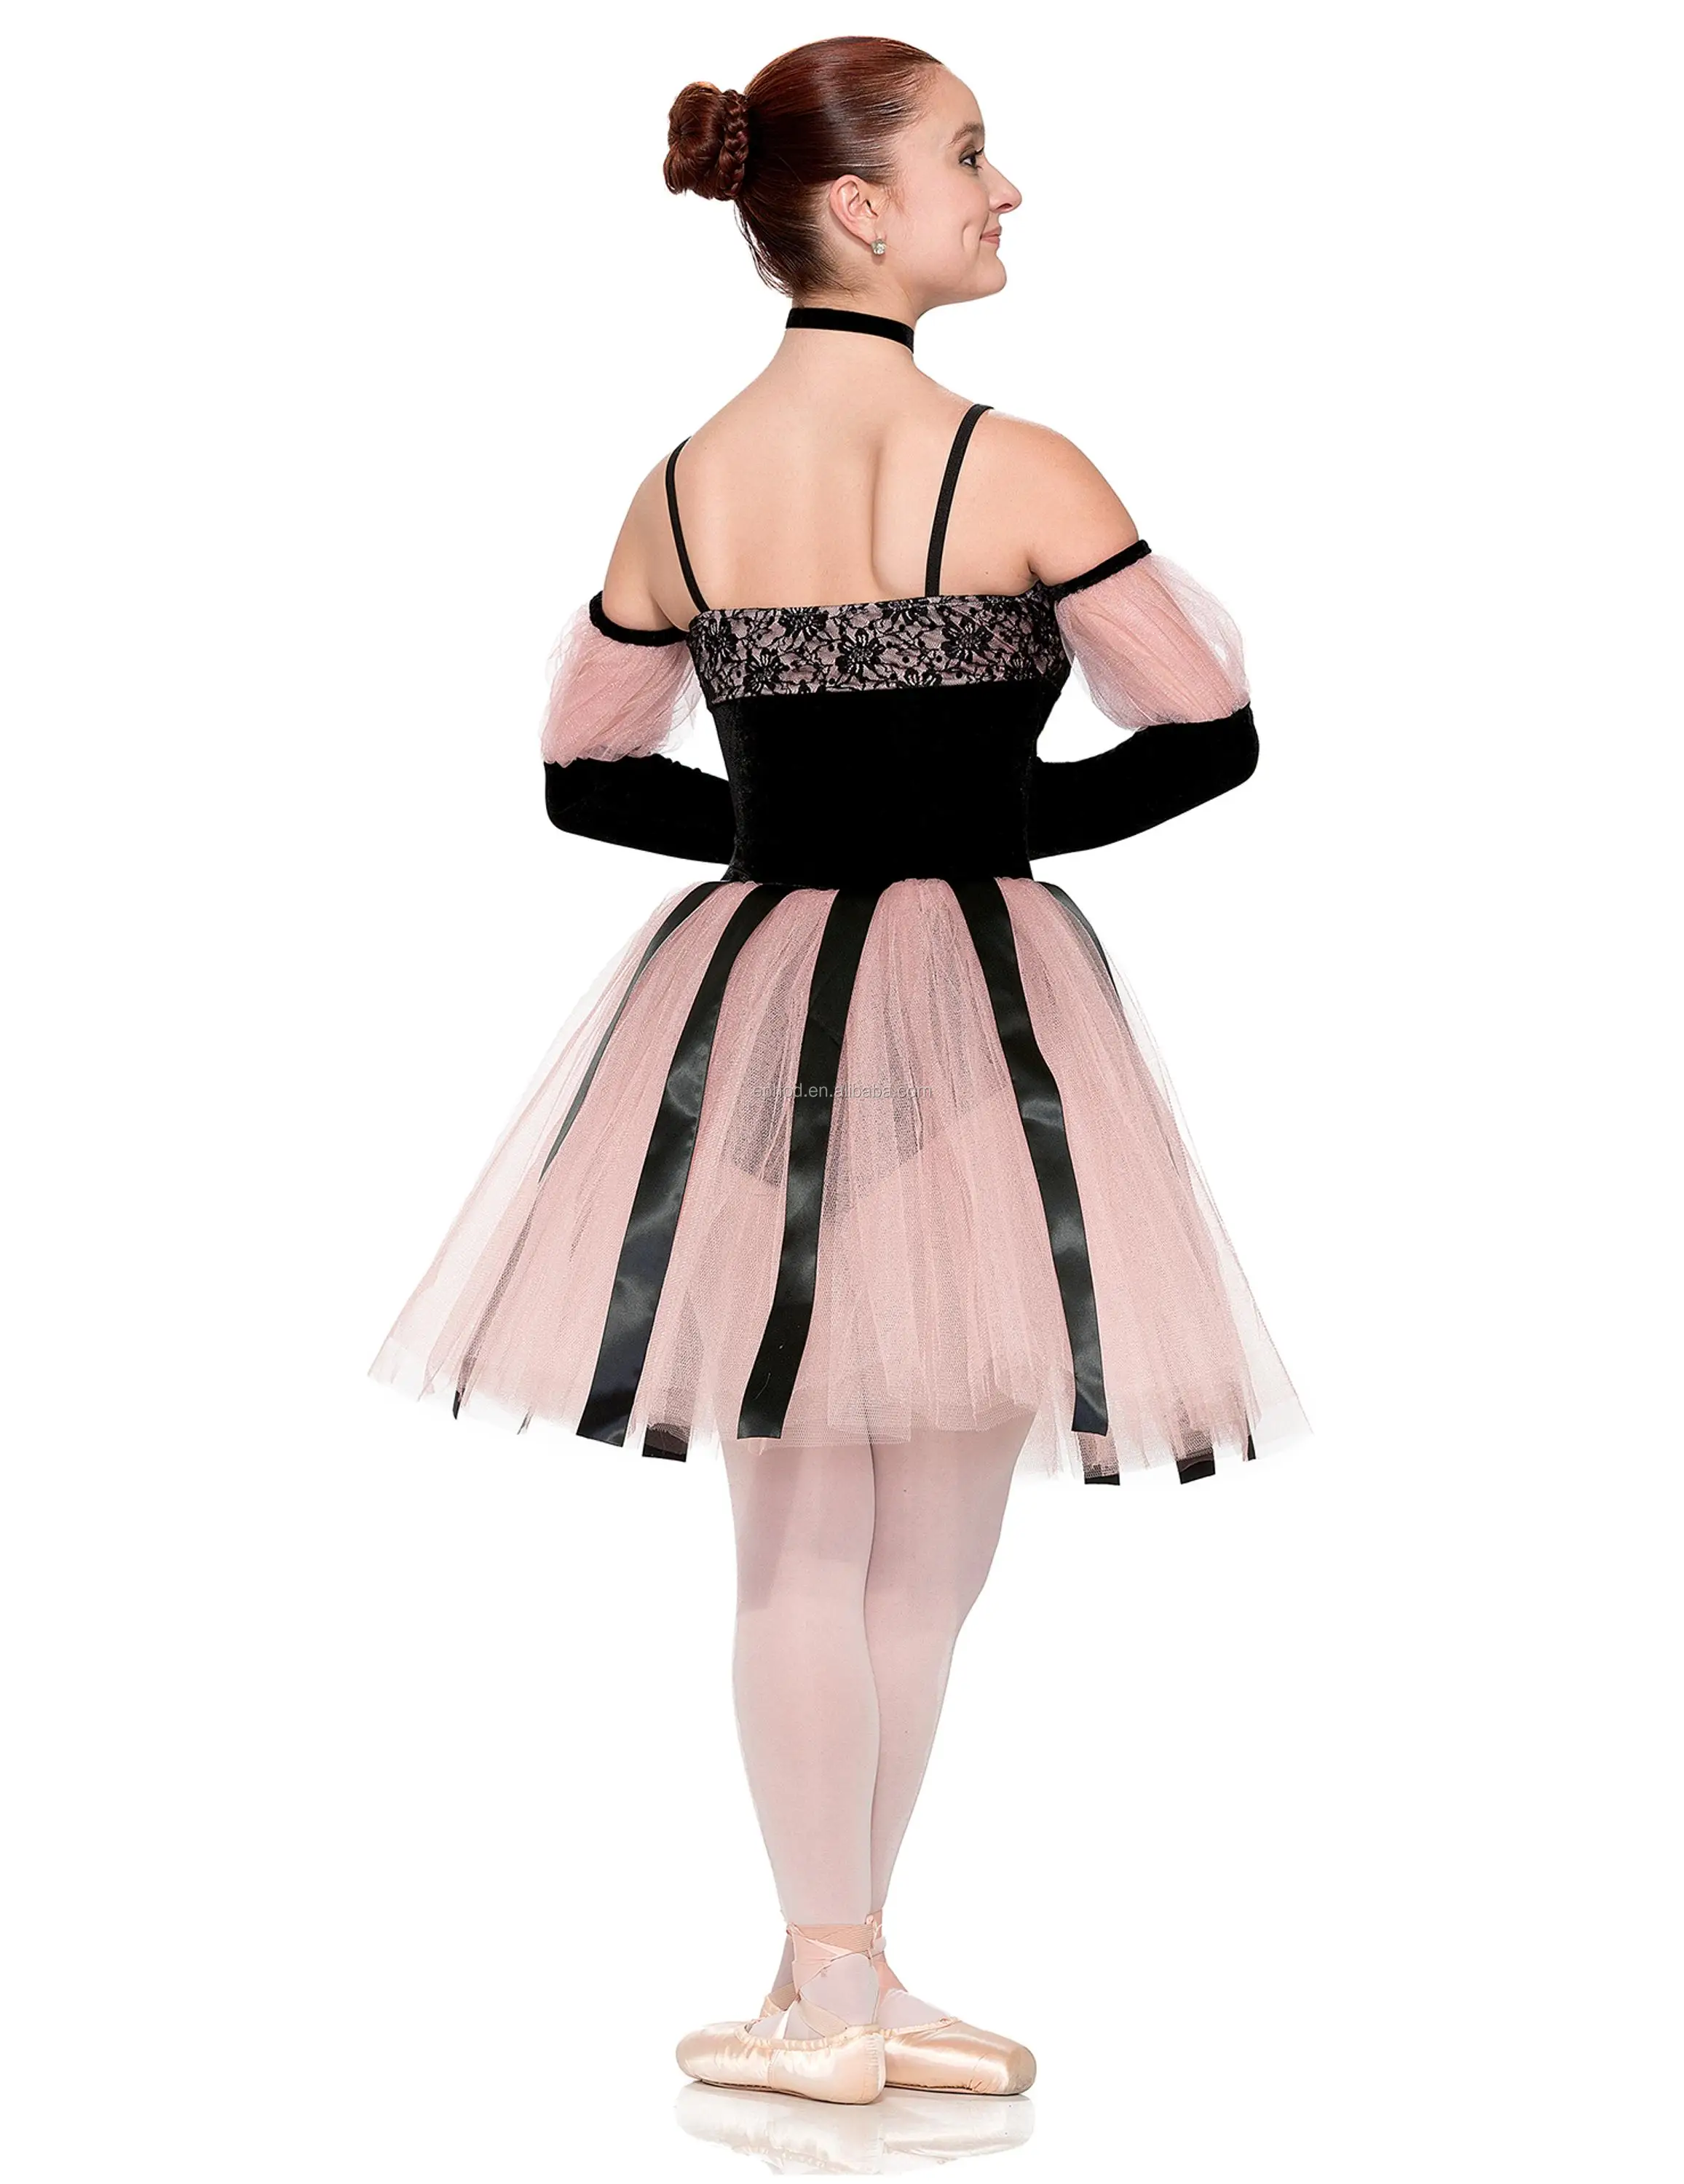 2018 新款设计舞蹈服装/芭蕾短裙/芭蕾舞裙 epbt18